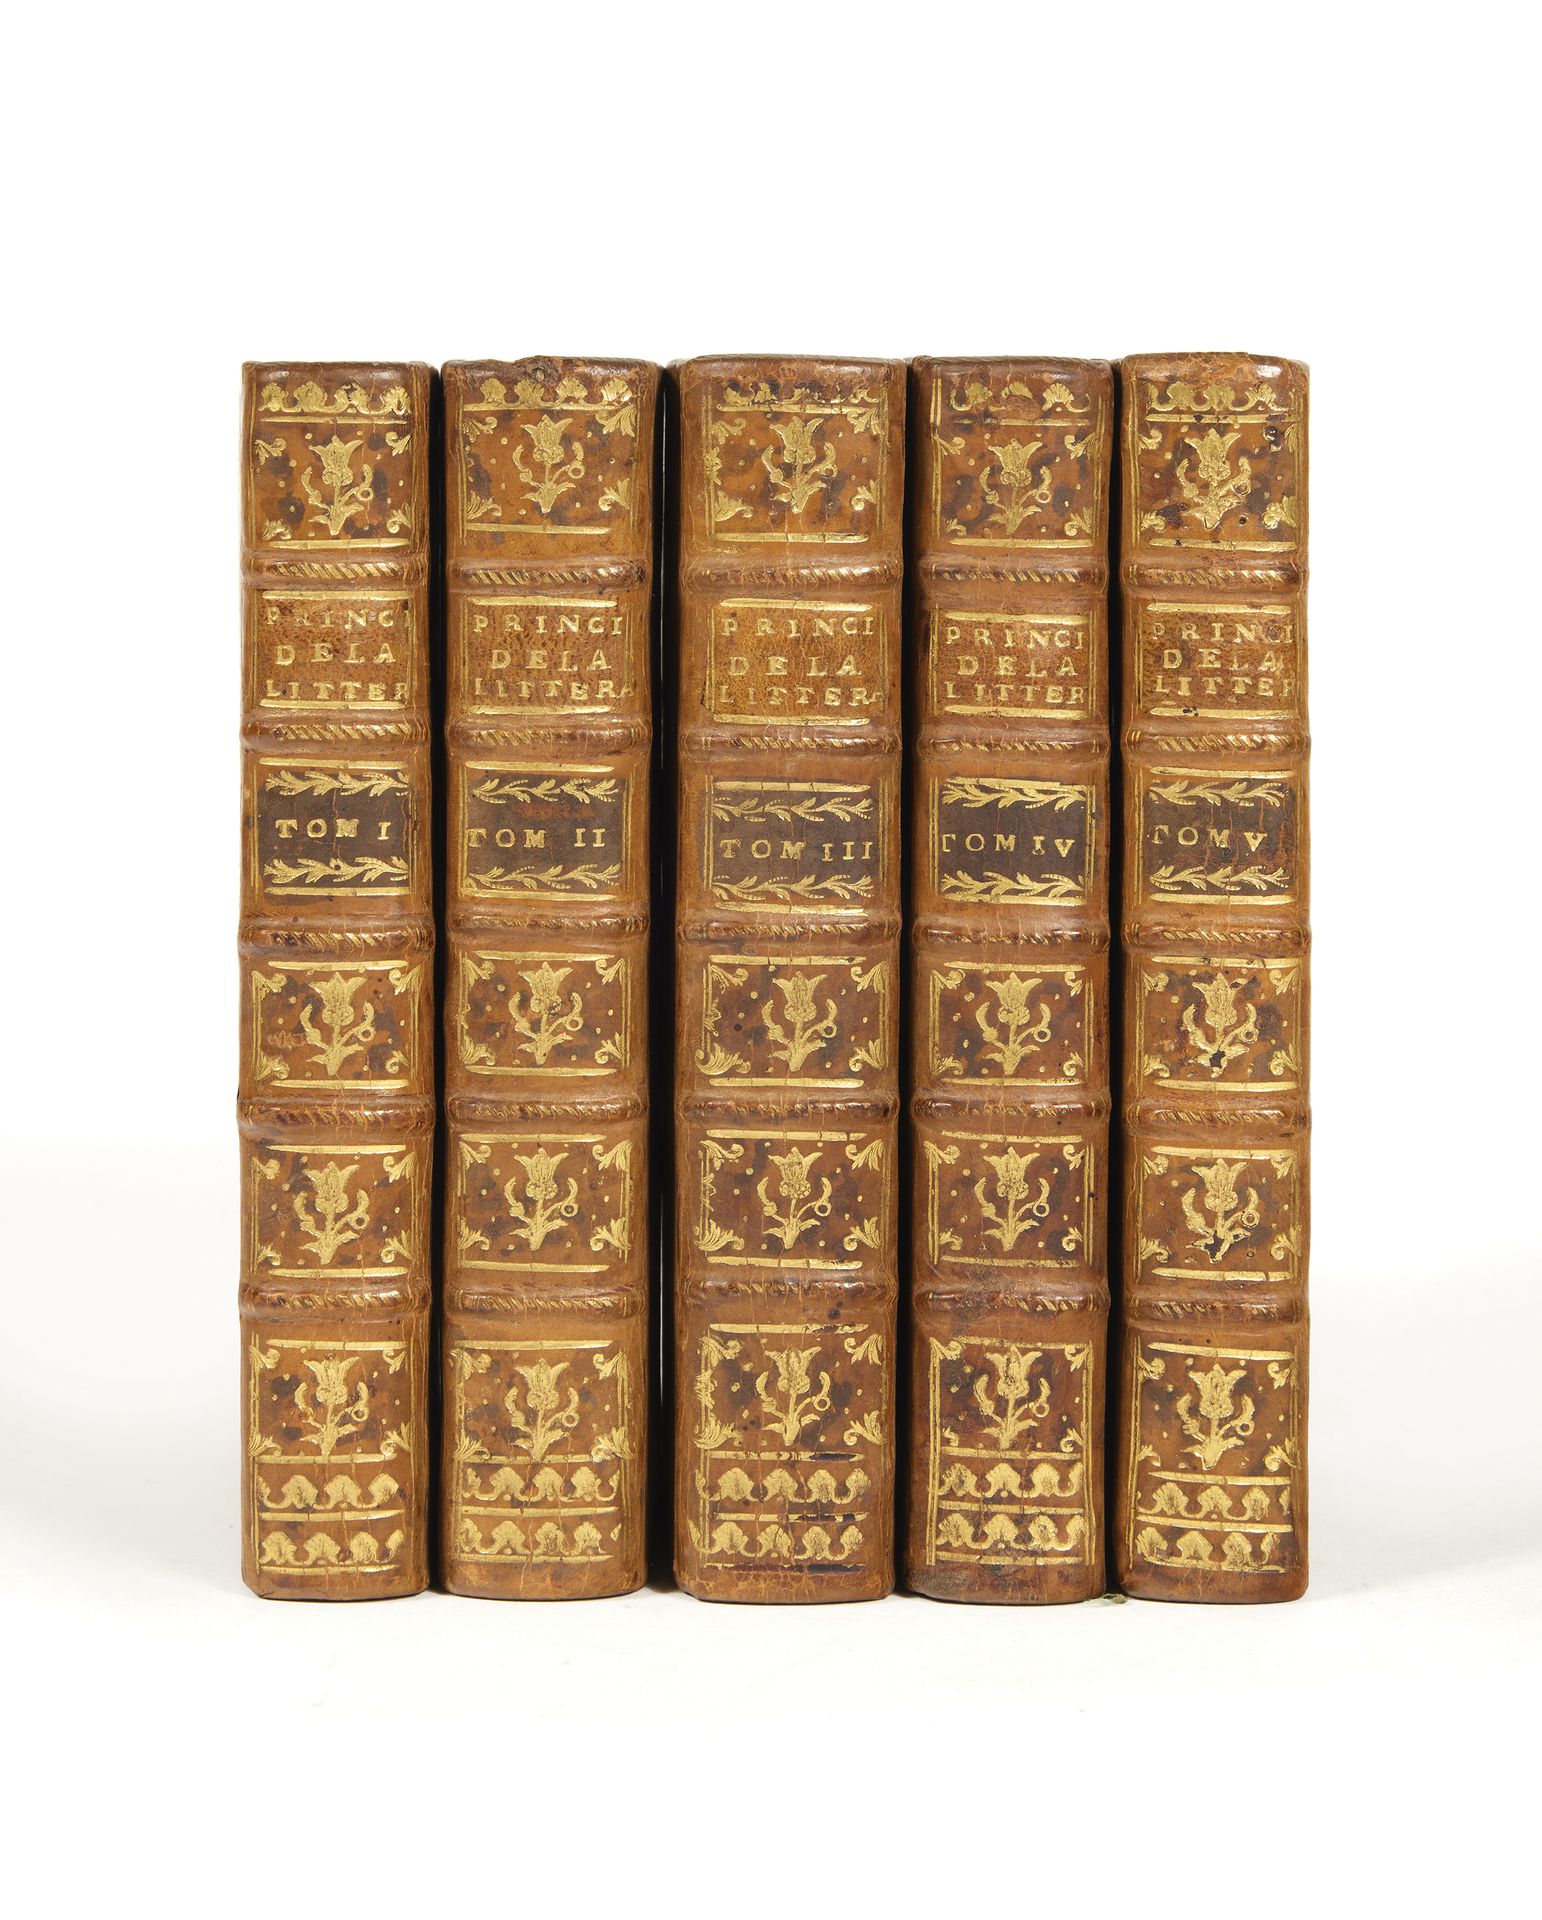 BATTEUX, Charles 文学的原则。新版。
Paris, chez Desaint & Saillant, 1764. 5卷12开本(163 x 95&hellip;